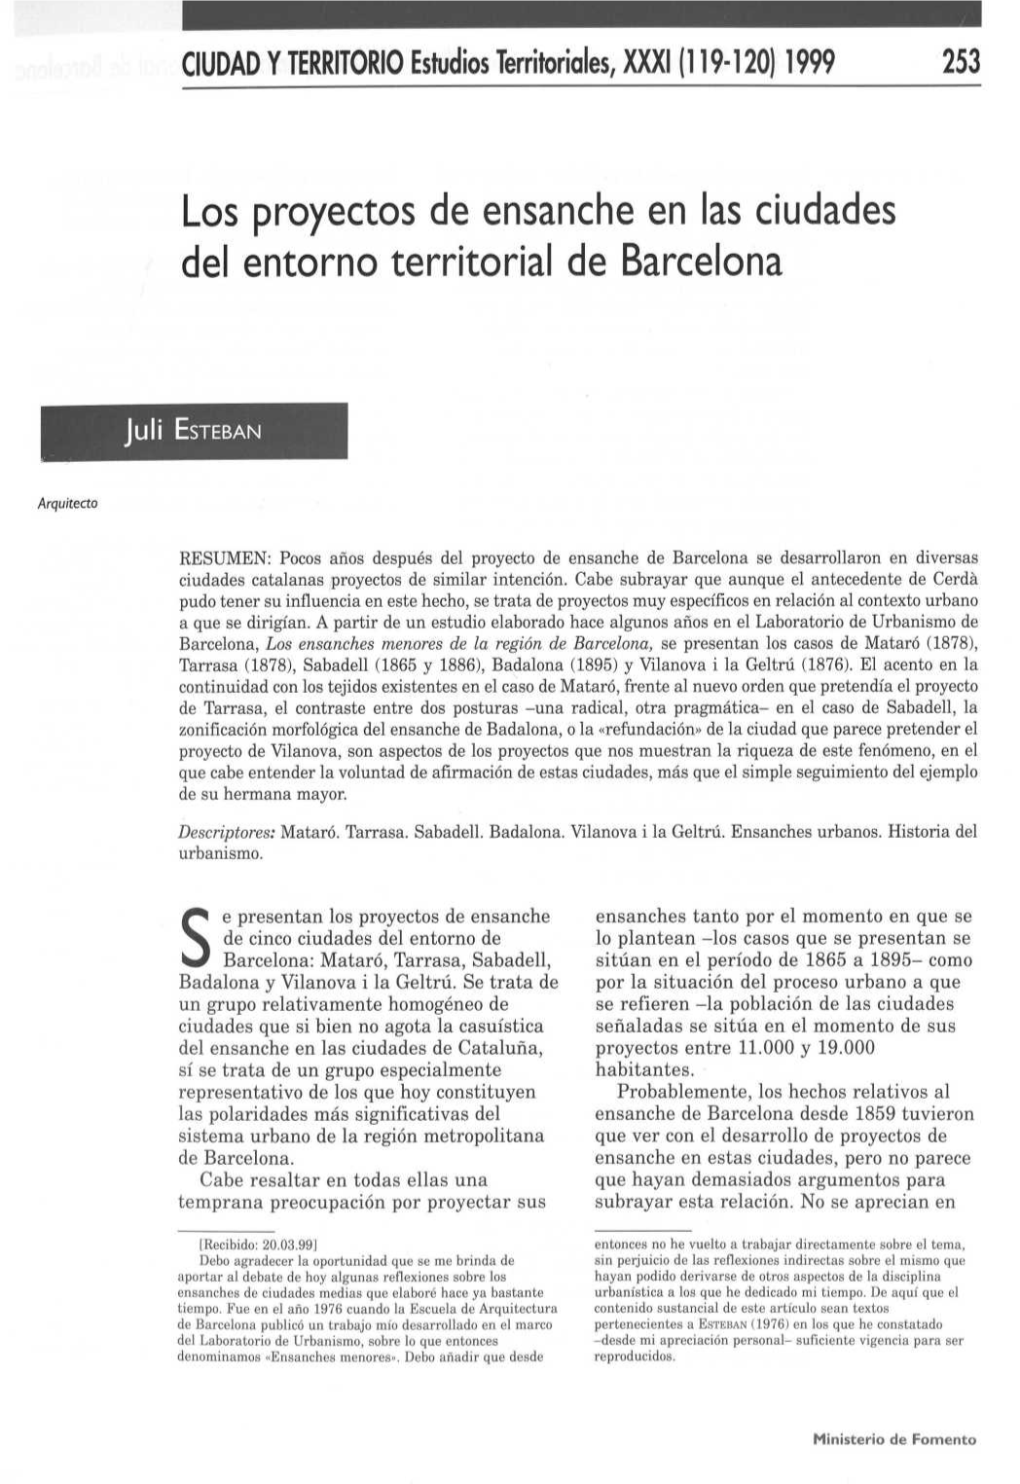 Los Proyectos De Ensanche En Las Ciudades Del Entorno Territorial De Barcelona